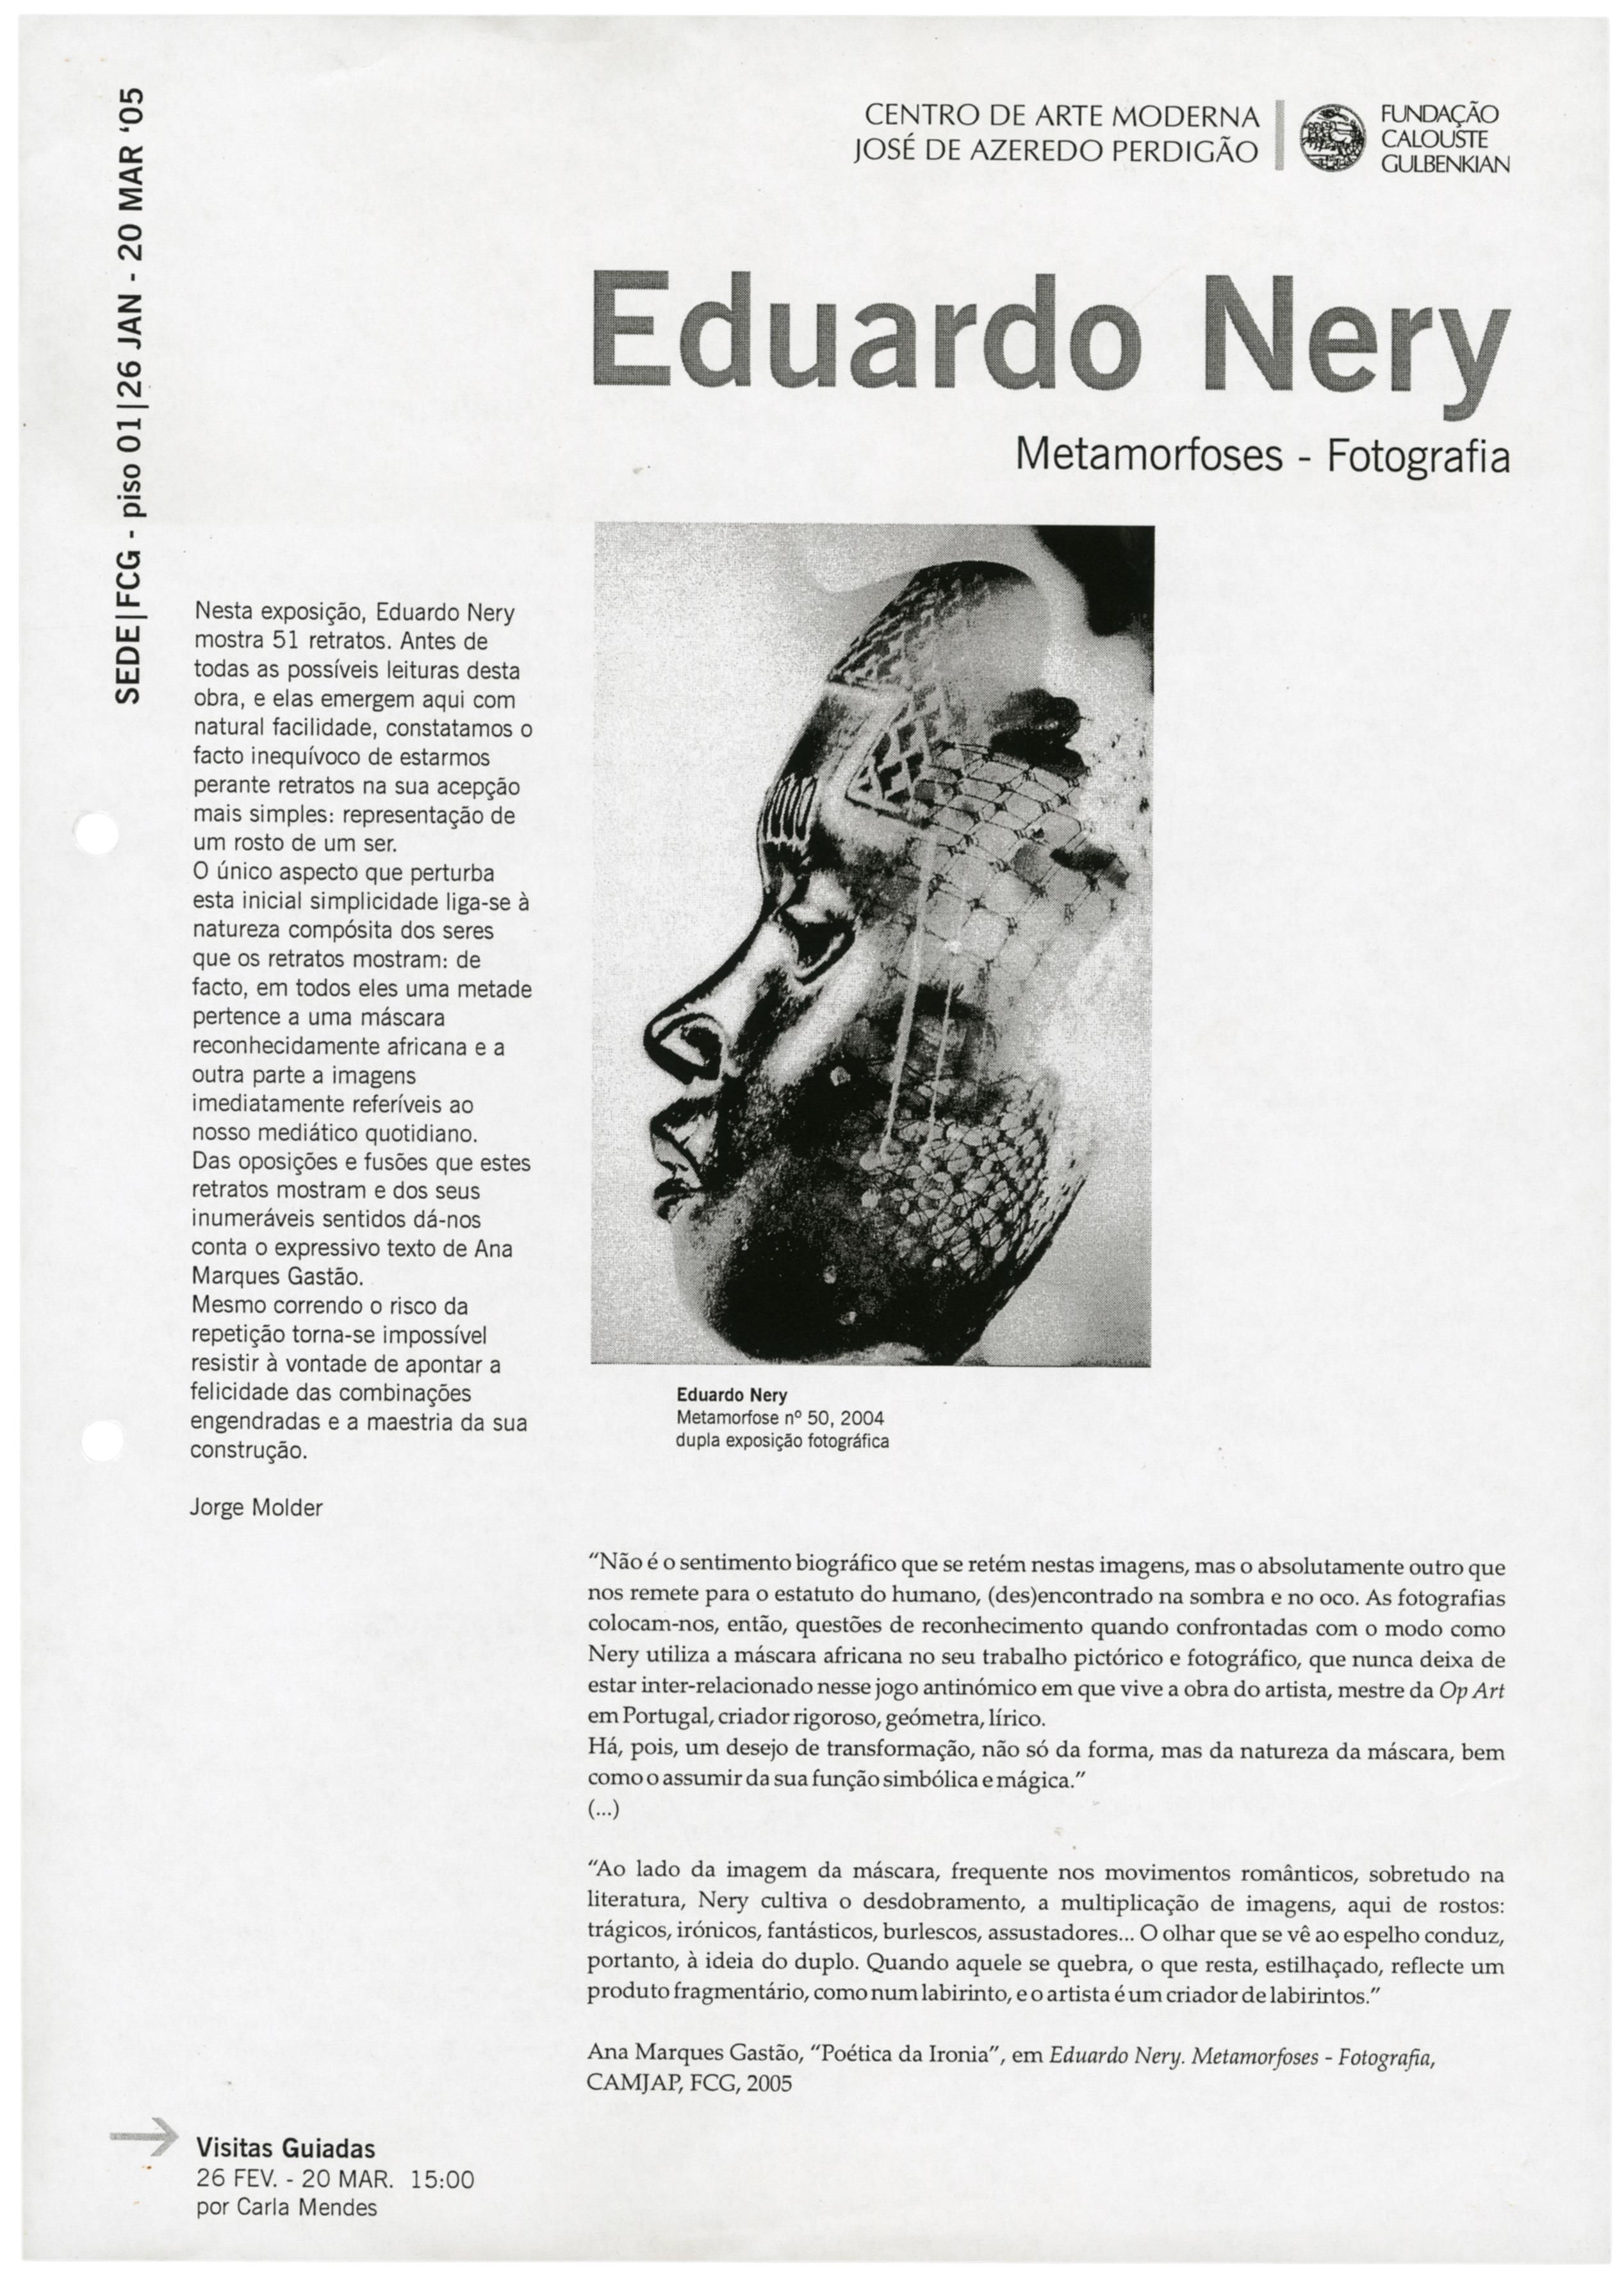 Eduardo Nery. Metamorfoses. Fotografia